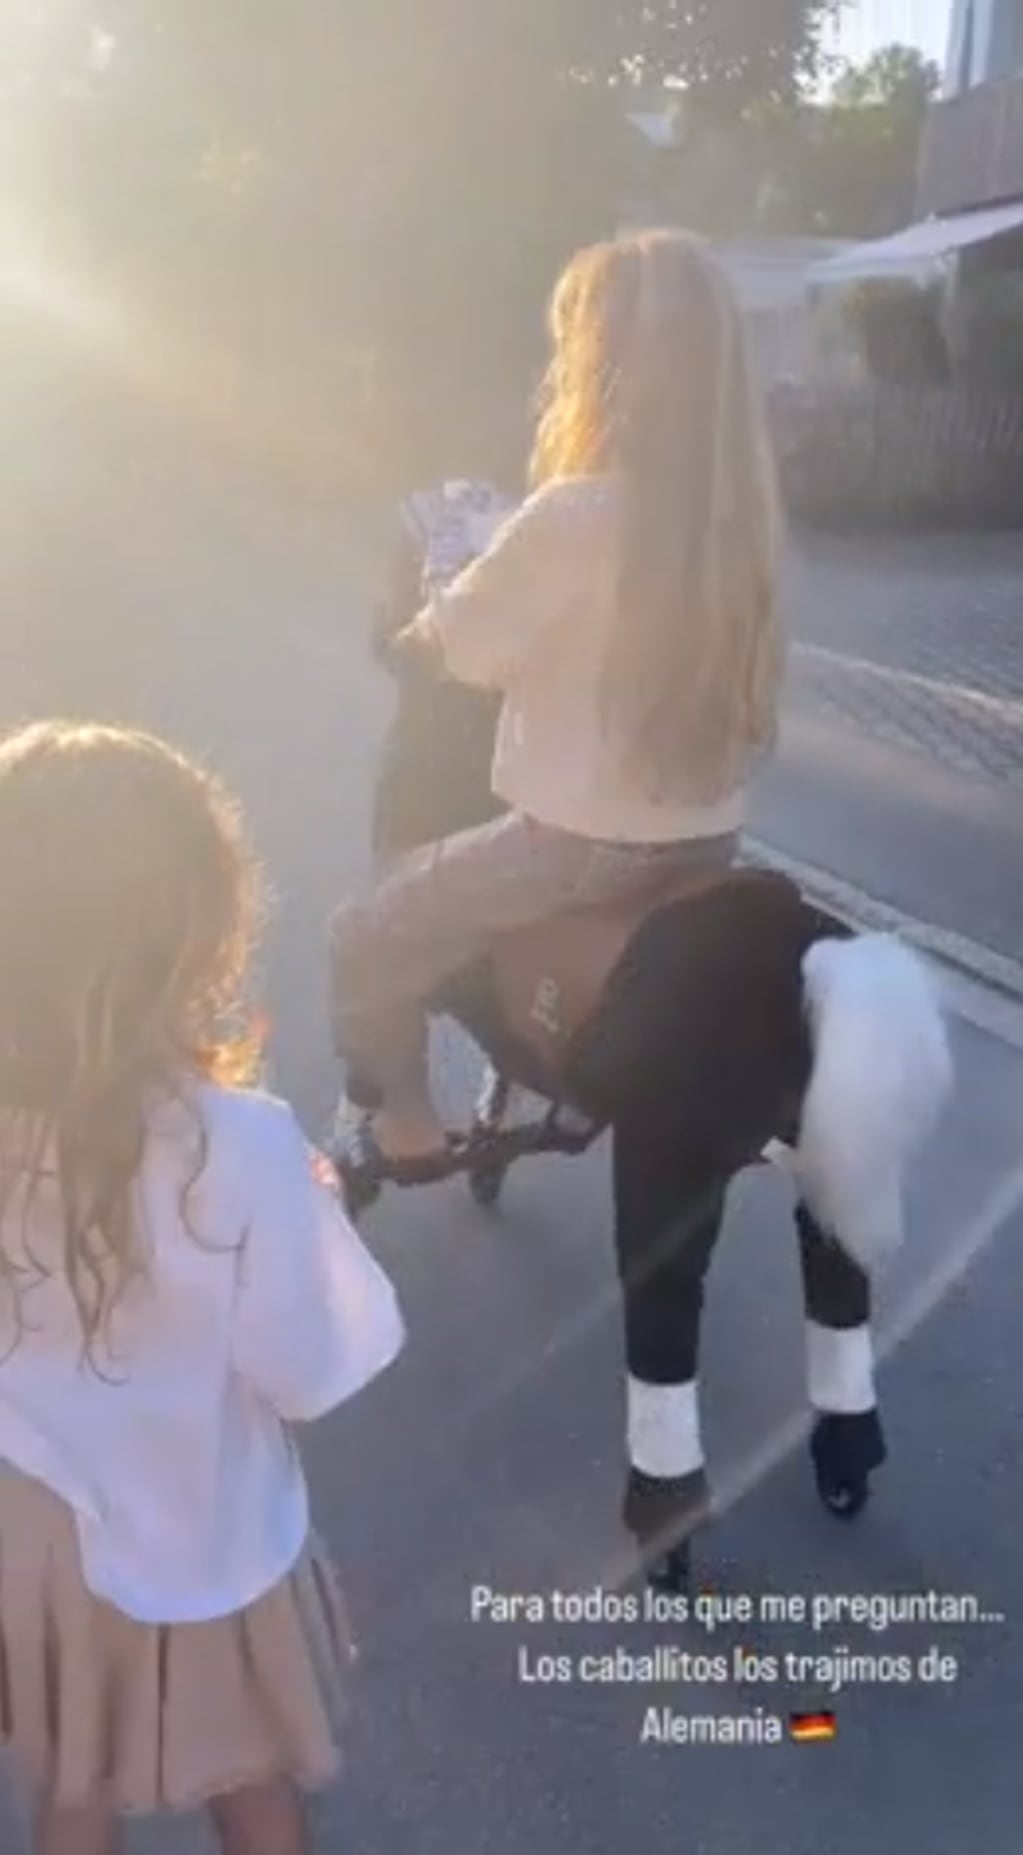 La modelo mostró el caballo de juguete que le trajo a sus hijas desde Alemania / Foto: Instagram